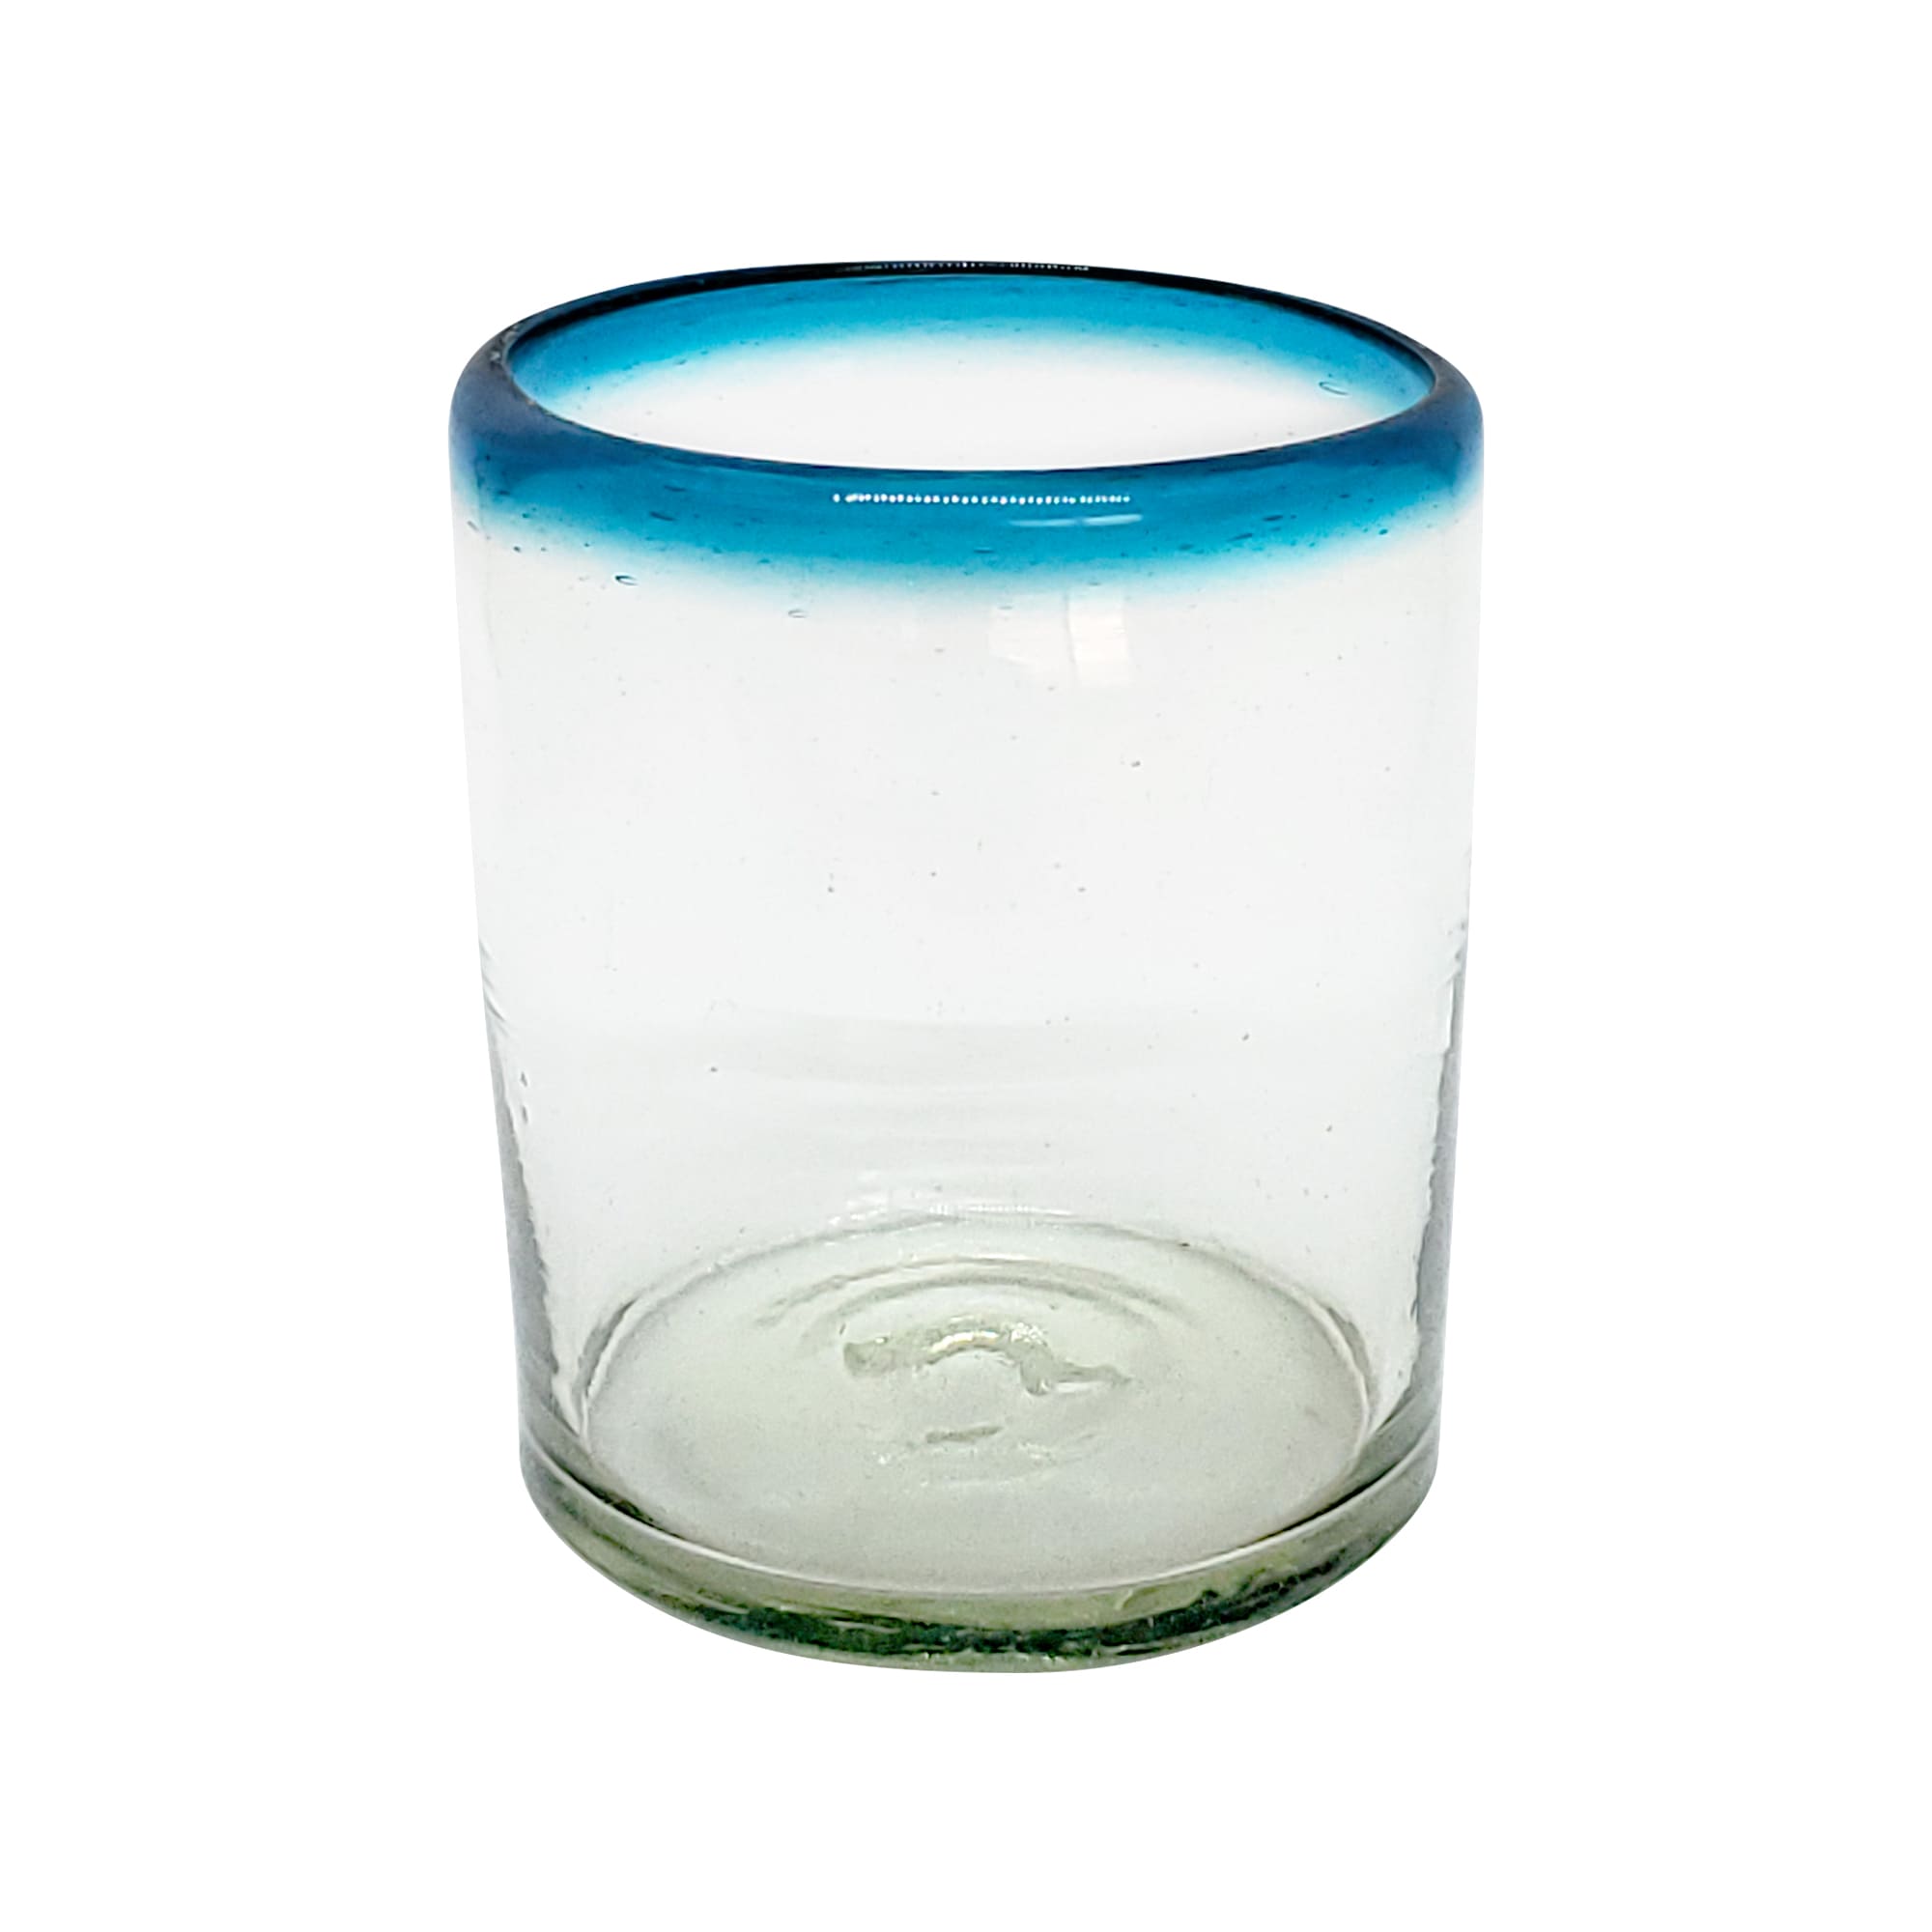 Borde de Color al Mayoreo / vasos chicos con borde azul aqua / Éstos vasos chicos son un gran complemento para su juego de jarra y vasos grandes.